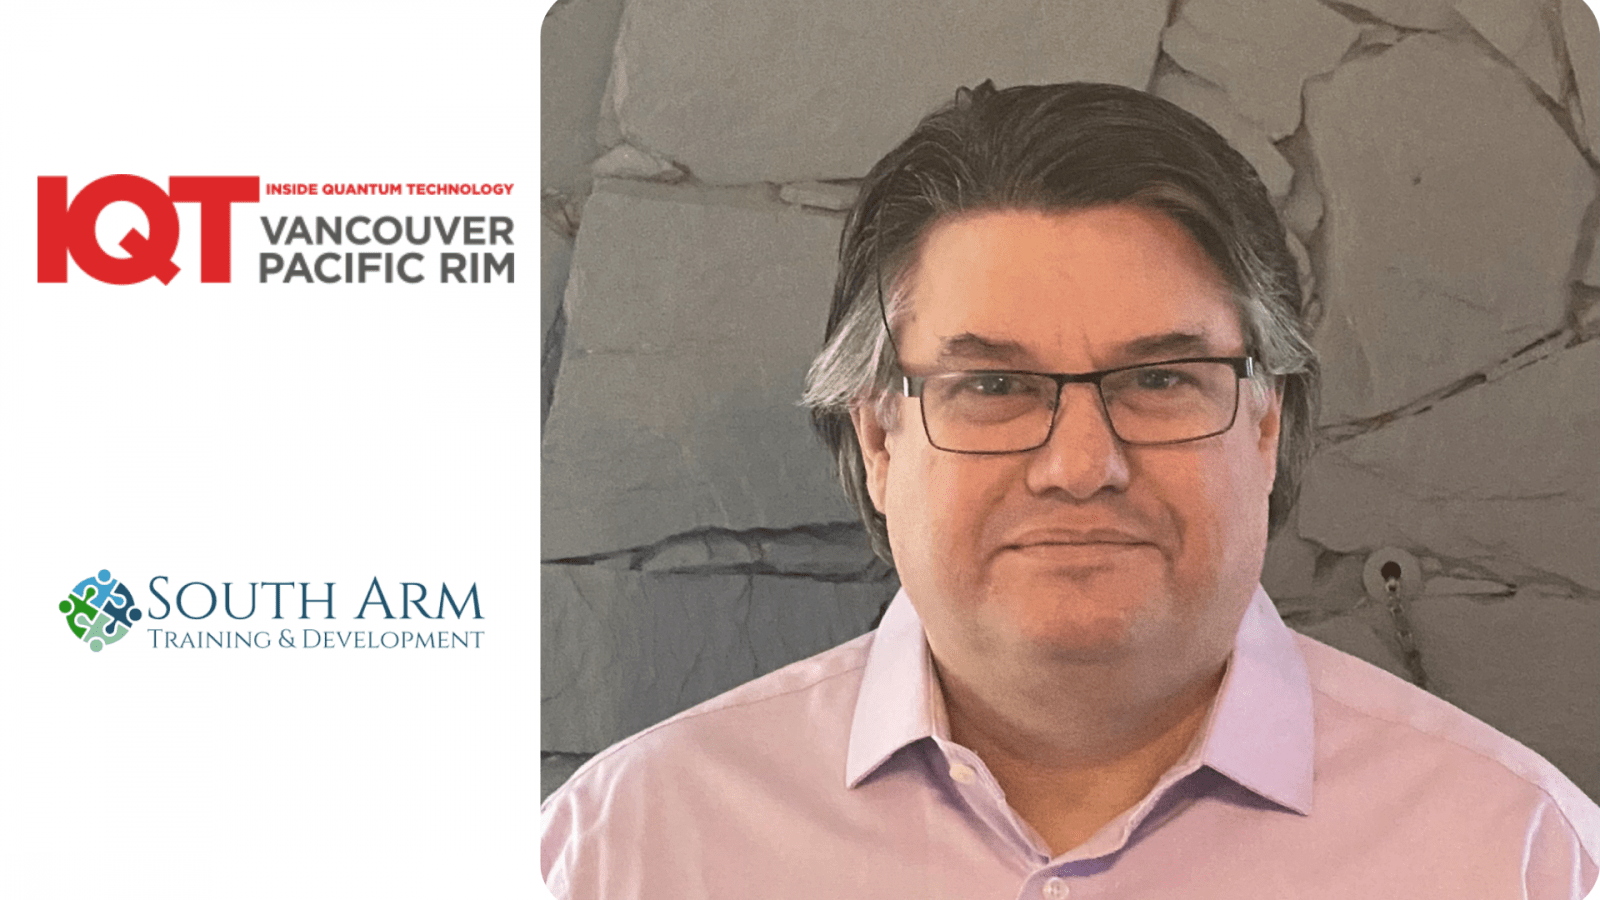 Dennis Green, directeur bij South Arm Training and Development Ltd. is in 2024 spreker voor de IQT Vancouver/Pacific Rim-conferentie